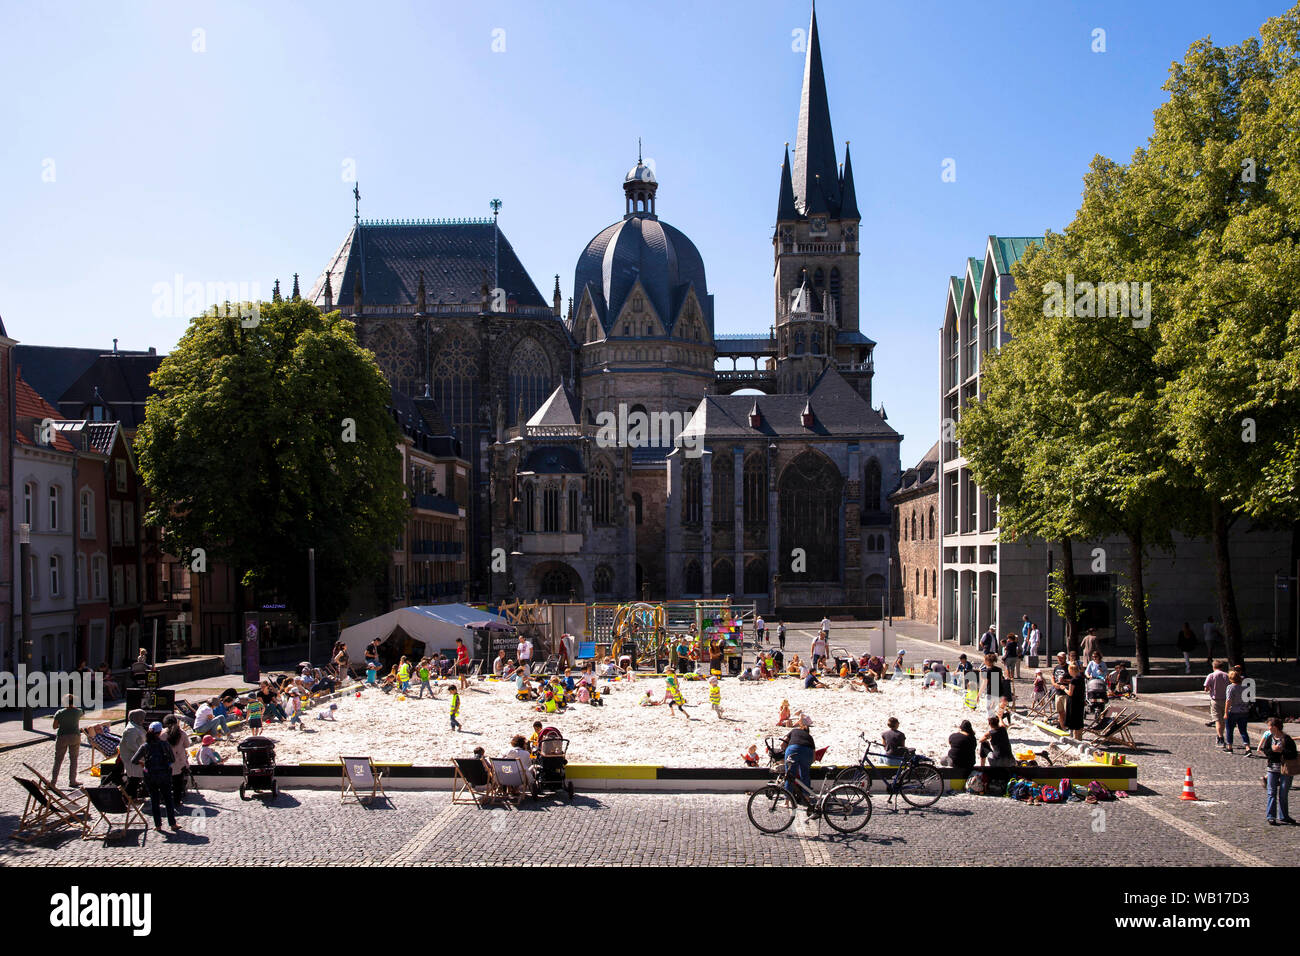 La cathédrale et la place d'archimède Katschhof avec bac à sable pour les enfants, Aix-la-Chapelle, Rhénanie du Nord-Westphalie, Allemagne. der Dom und der Katschhof, Arc Banque D'Images